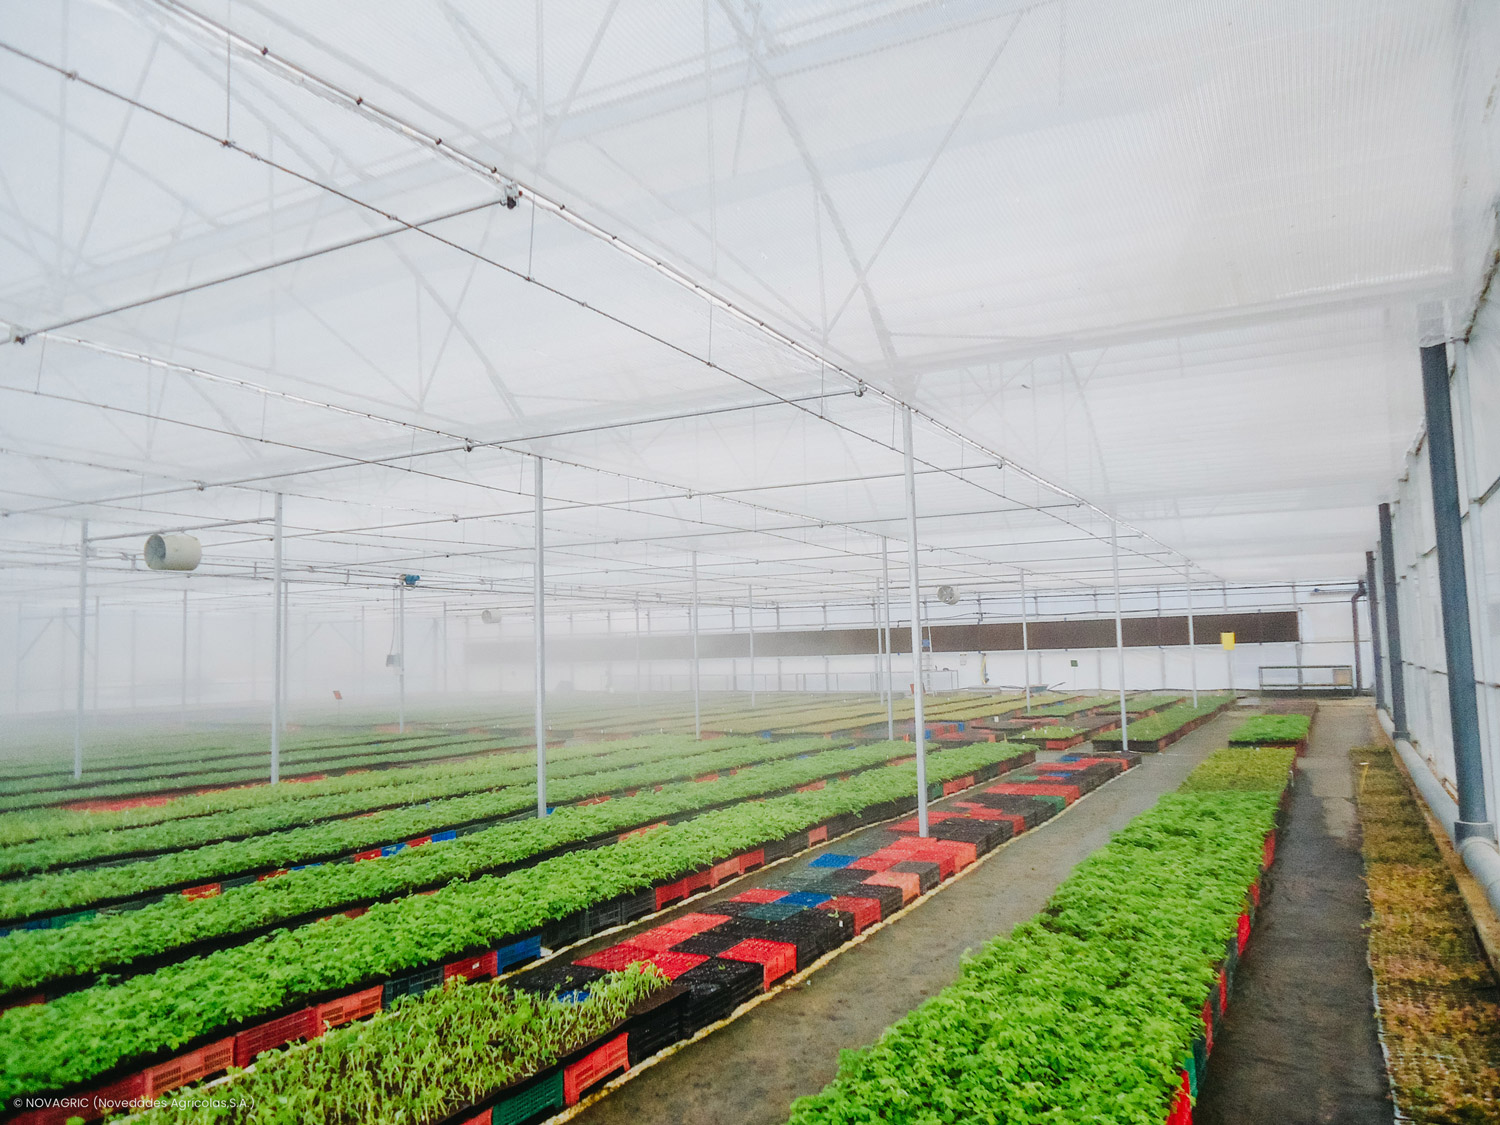 Novagric desarrolló un proyecto de invernadero semillero tecnológico en Marruecos para la producción profesional de frutos rojos.